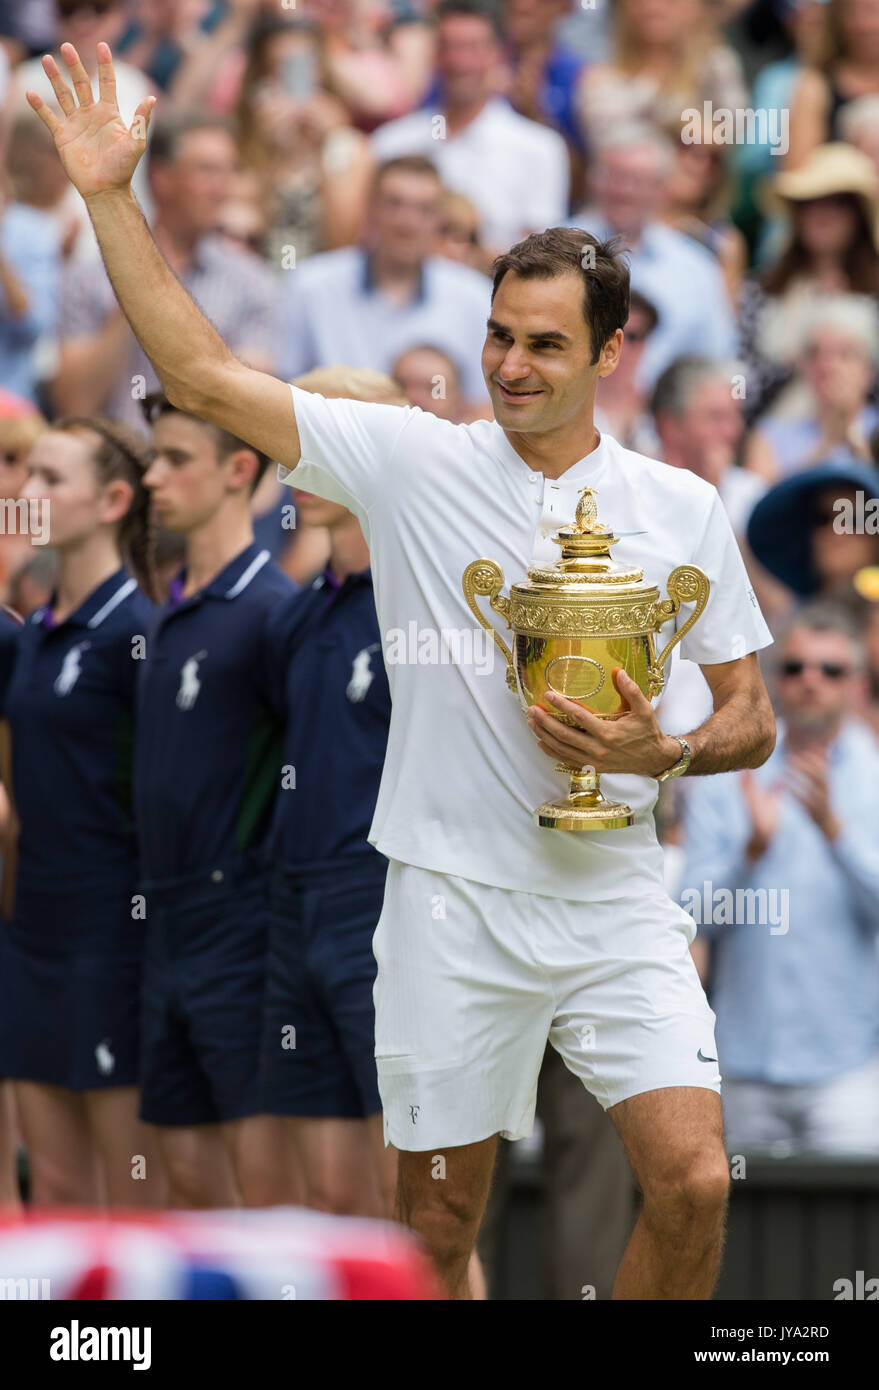 Roger Federer montrant trophée pour les spectateurs dans les tribunes à Wimbledon Banque D'Images